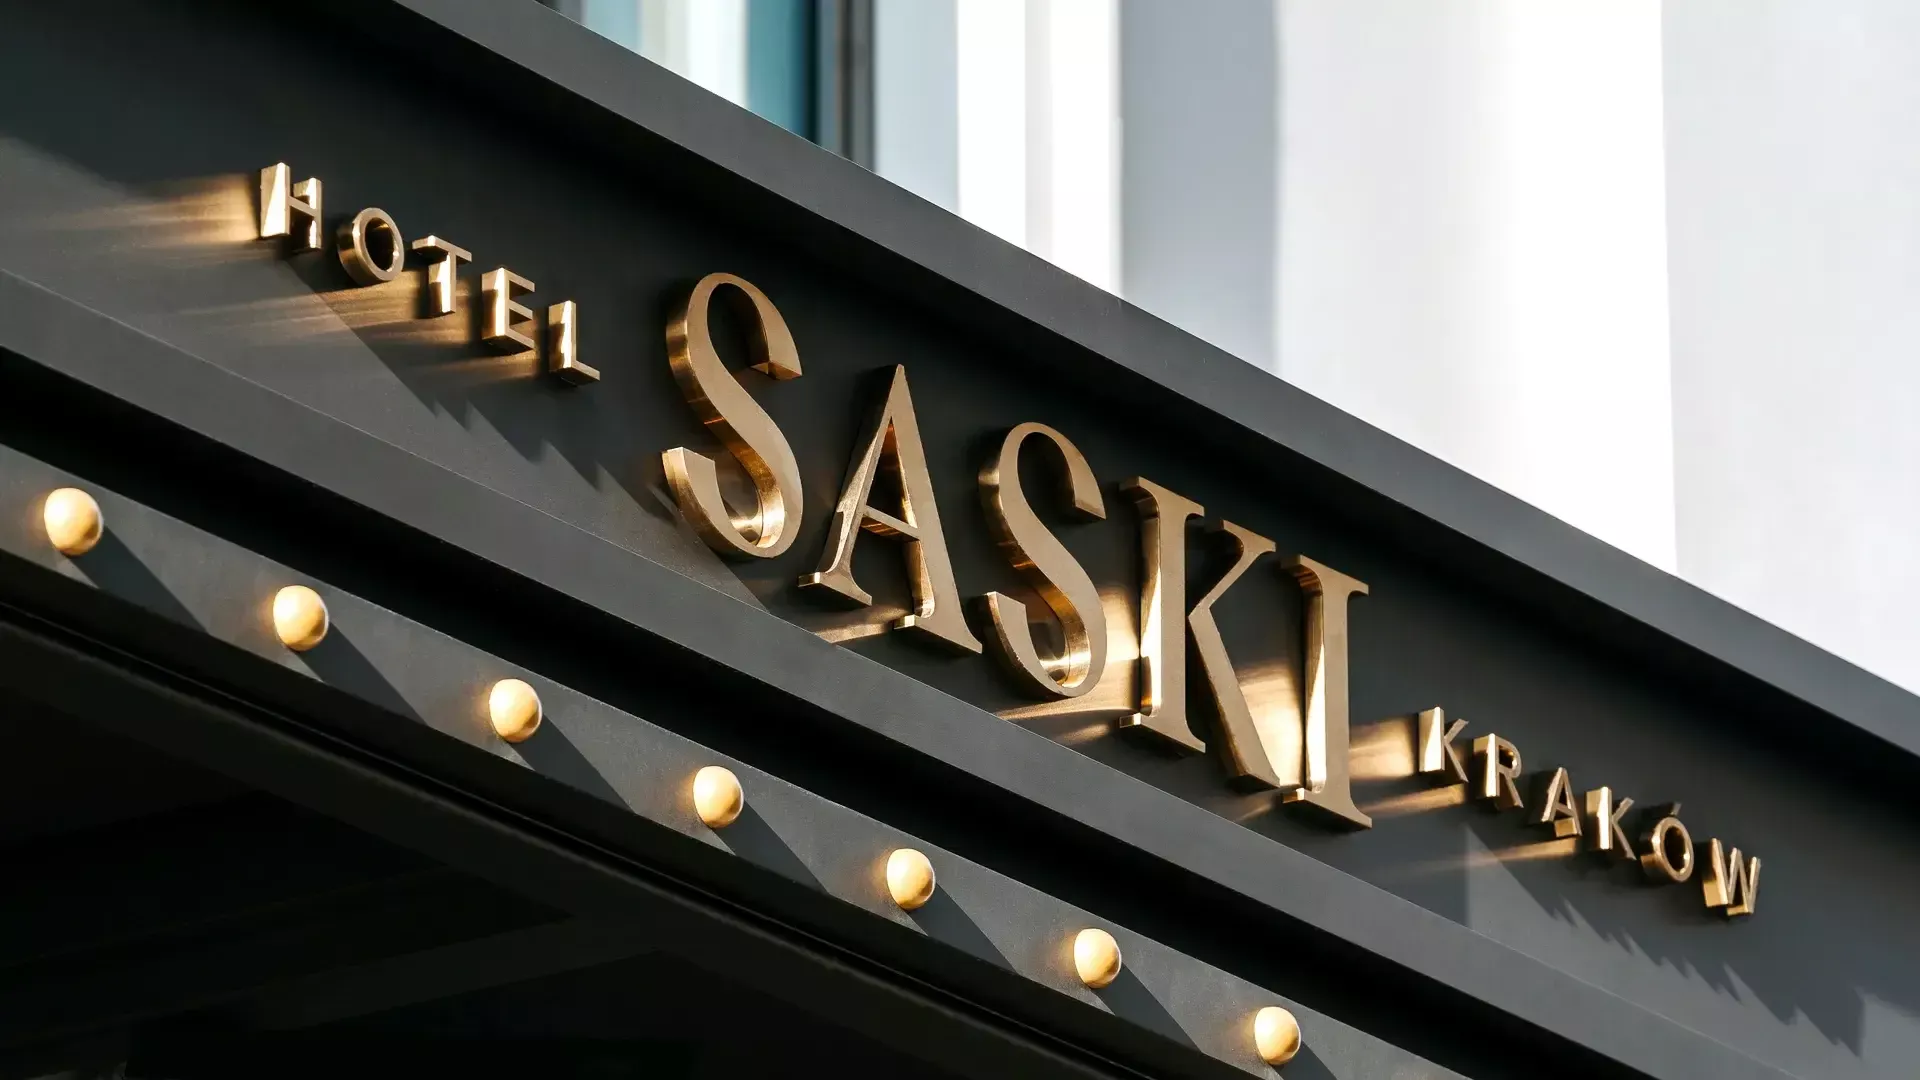 Hôtel Saski - Lettres en acier inoxydable brossé doré à l'extérieur du bâtiment de l'hôtel Saski